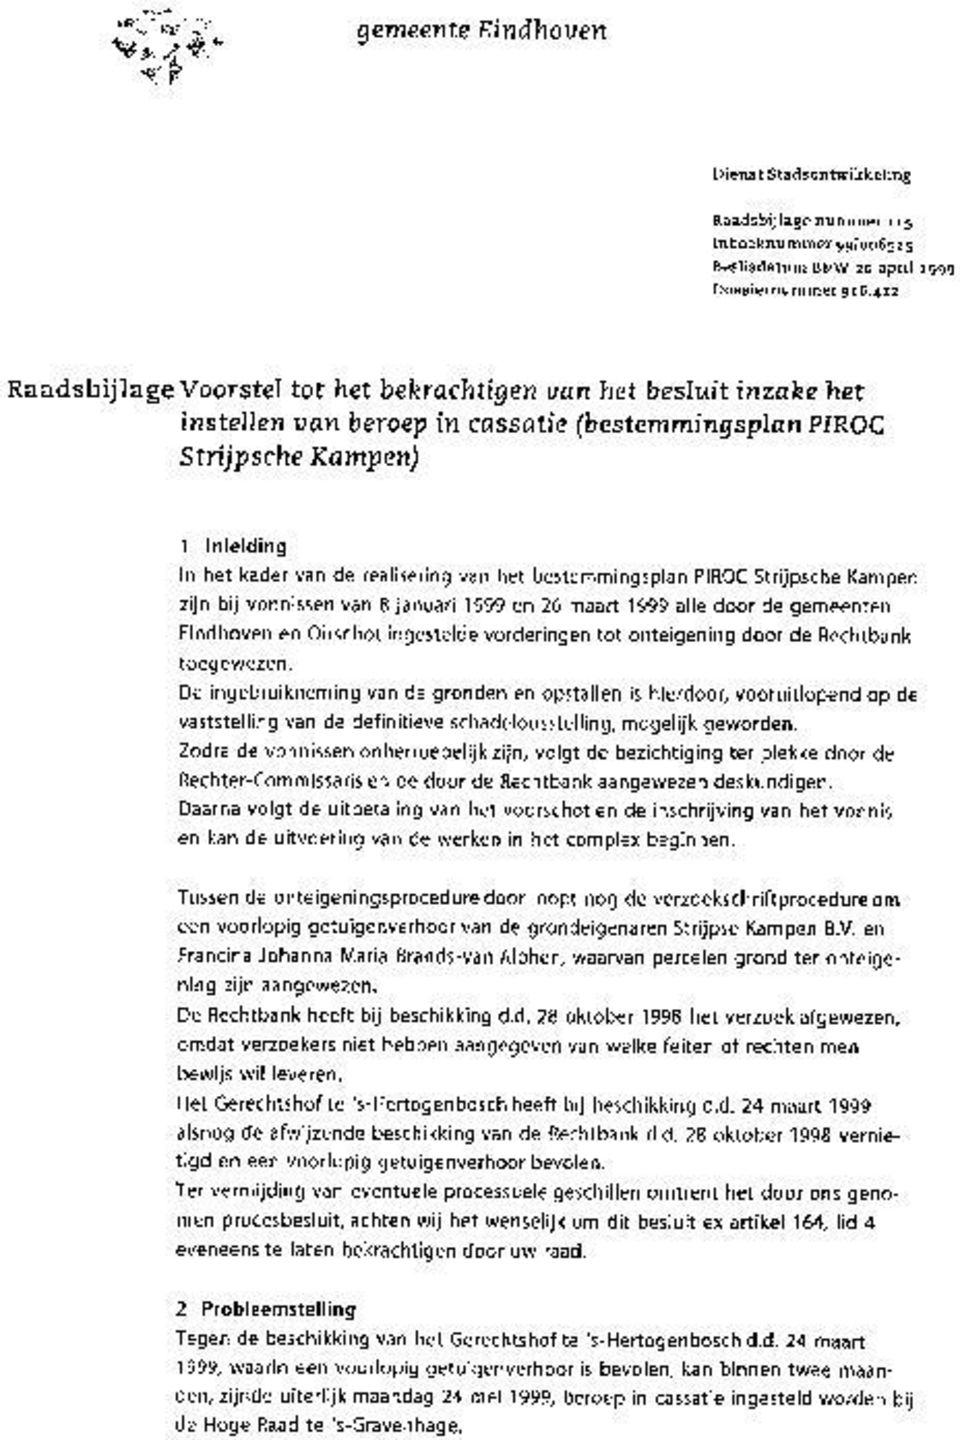 het bestemmingsplan PIROC Strijpsche Kampen zijn bij vonnissen van 8 januari 1999 en 26 maart 1999 alle door de gemeenten Eindhoven en Oirschot ingestelde vorderingen tot onteigening door de